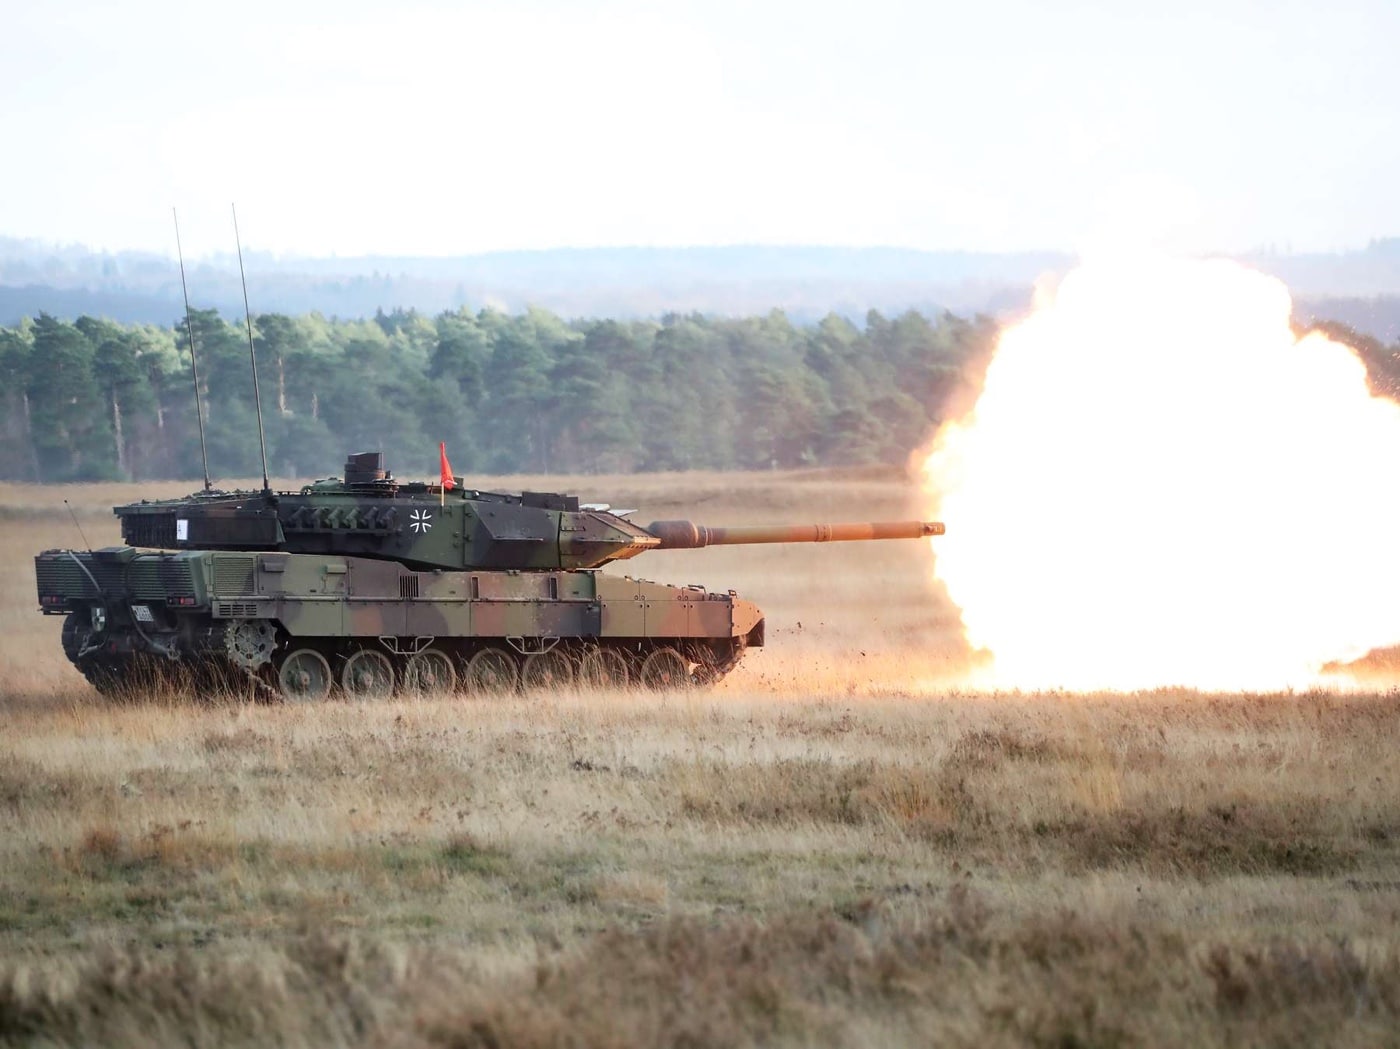 Leopard 2 A7 tank firing main gun